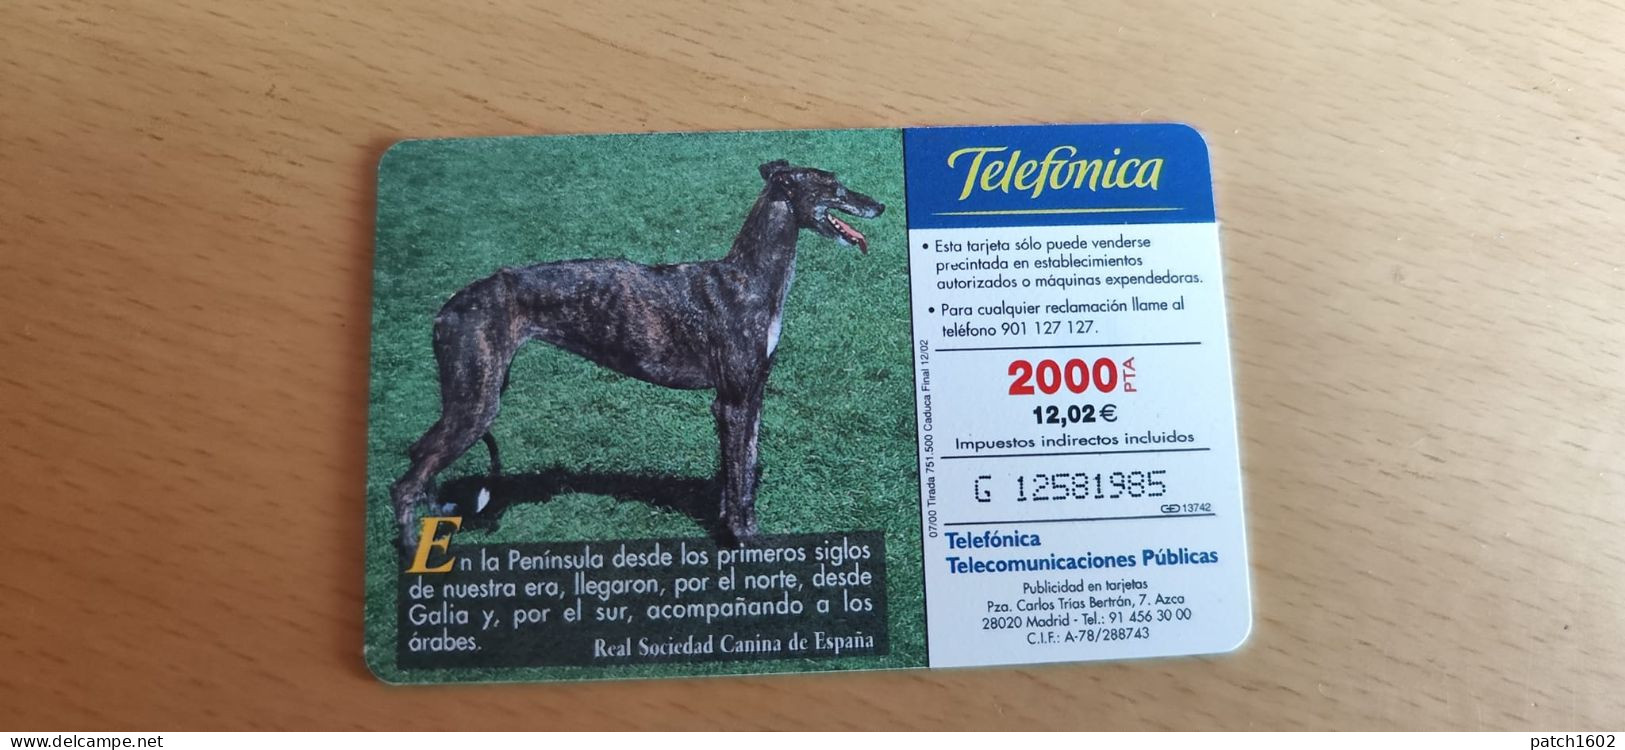 CALGO ESPAGNOL RAZAS IBERICAS CANINAS 2000+100 PTA TELEFONICA - Perros